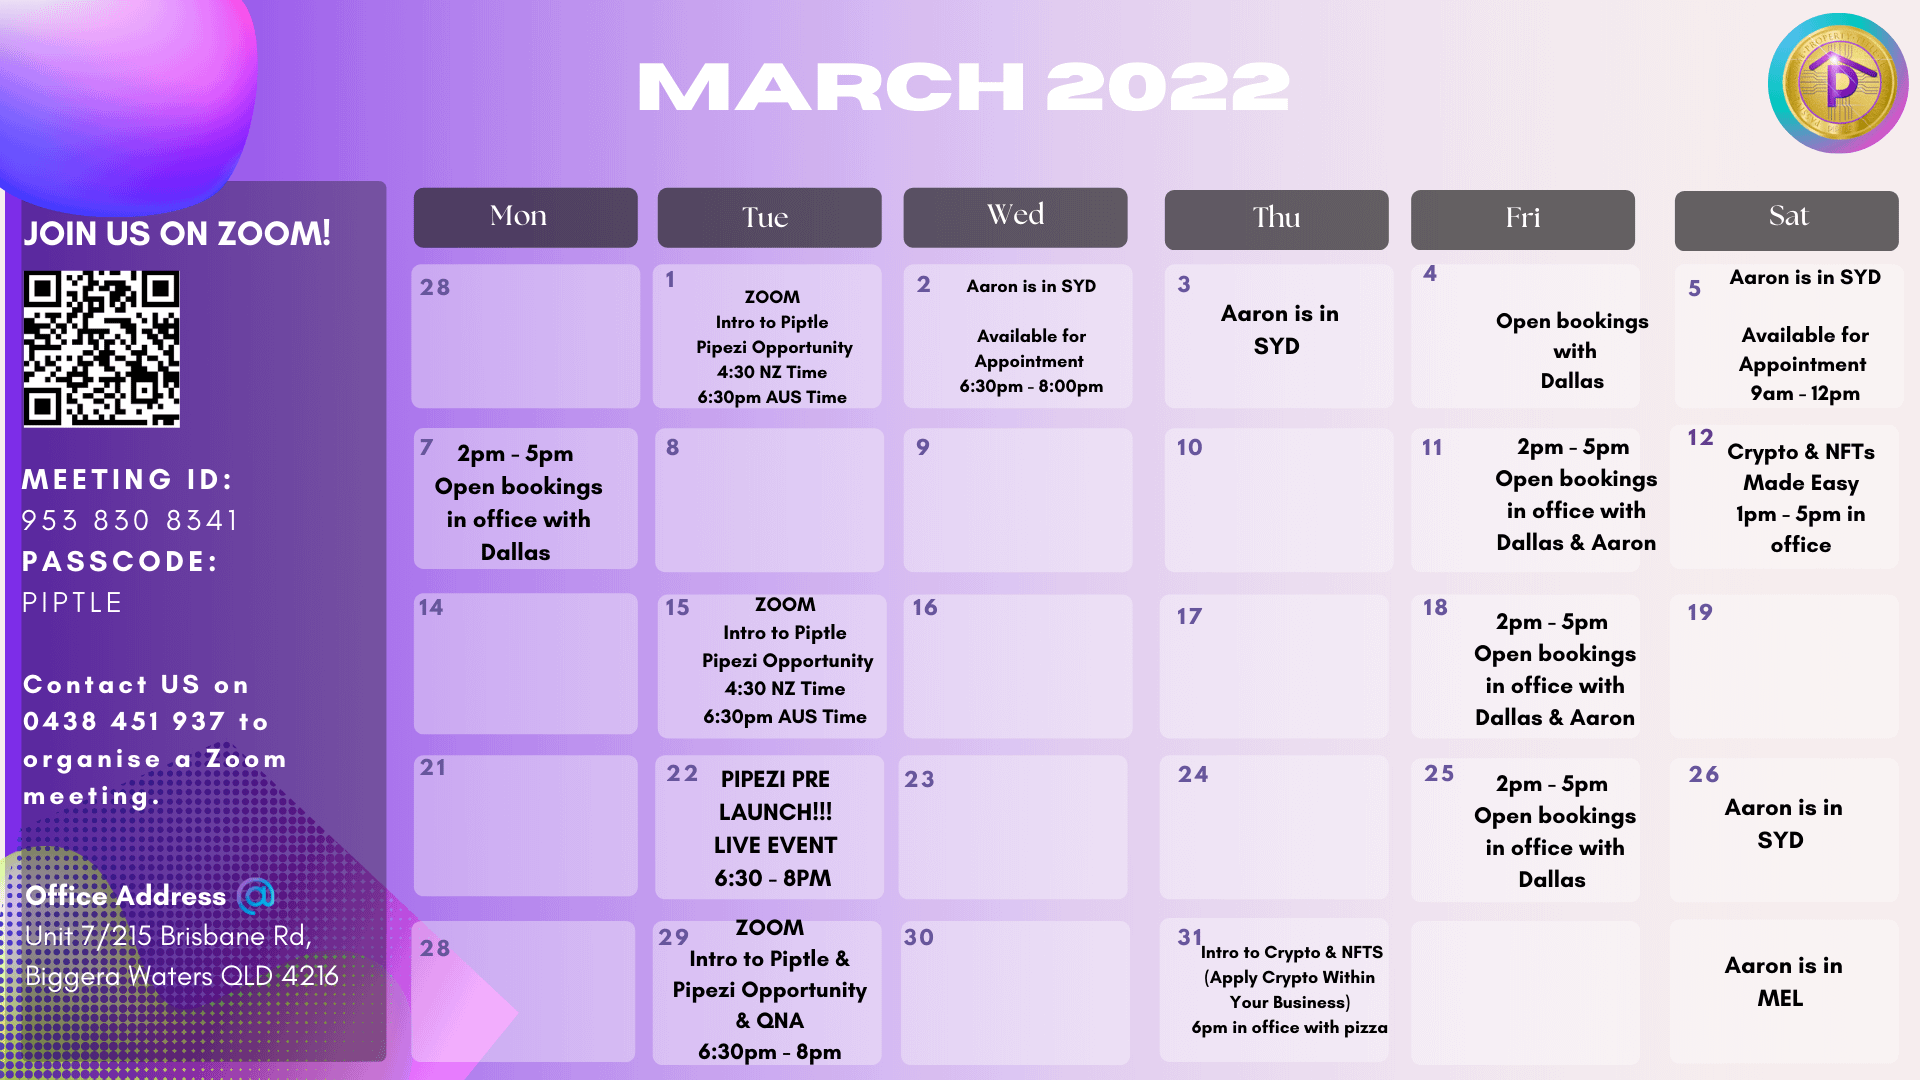 March Calendar 2022